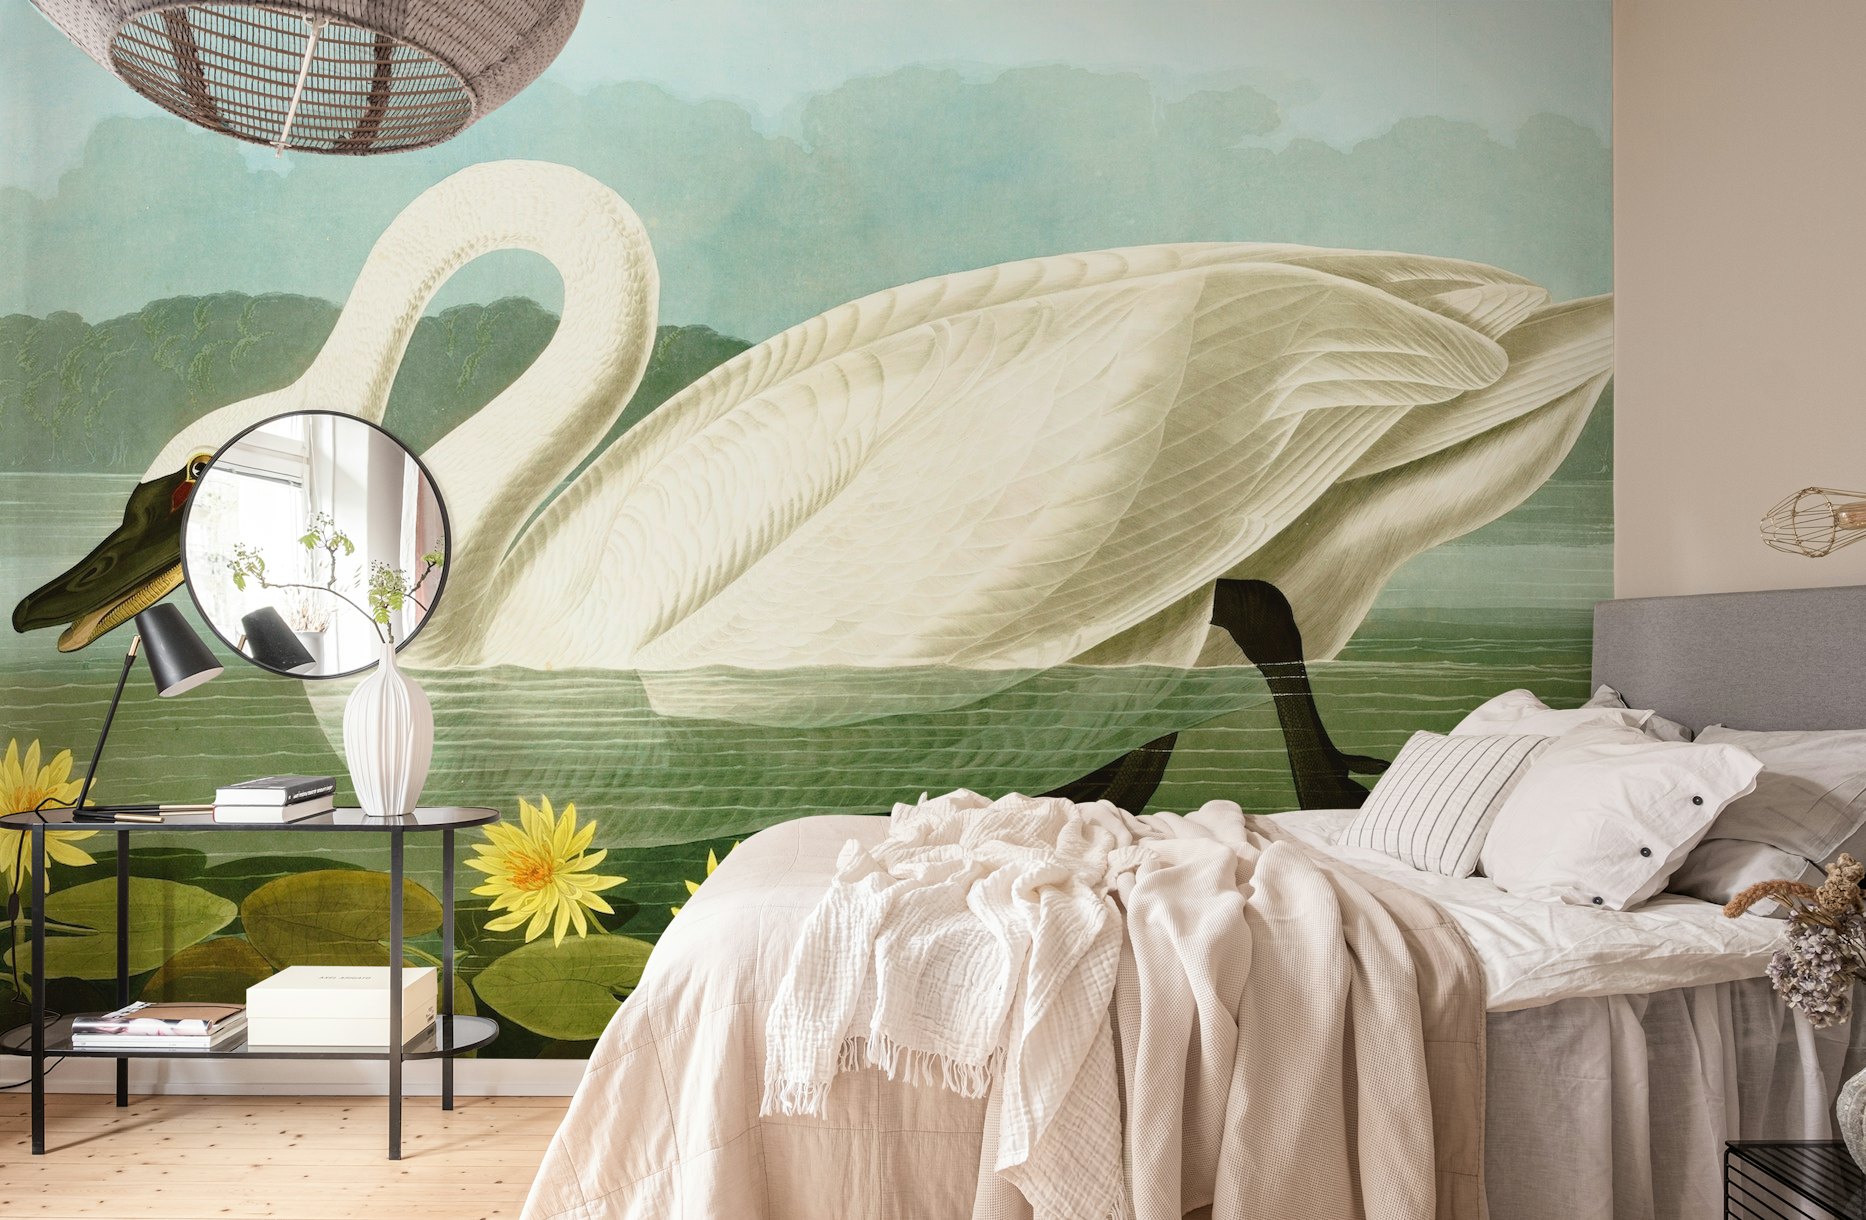 Swan wallpaper